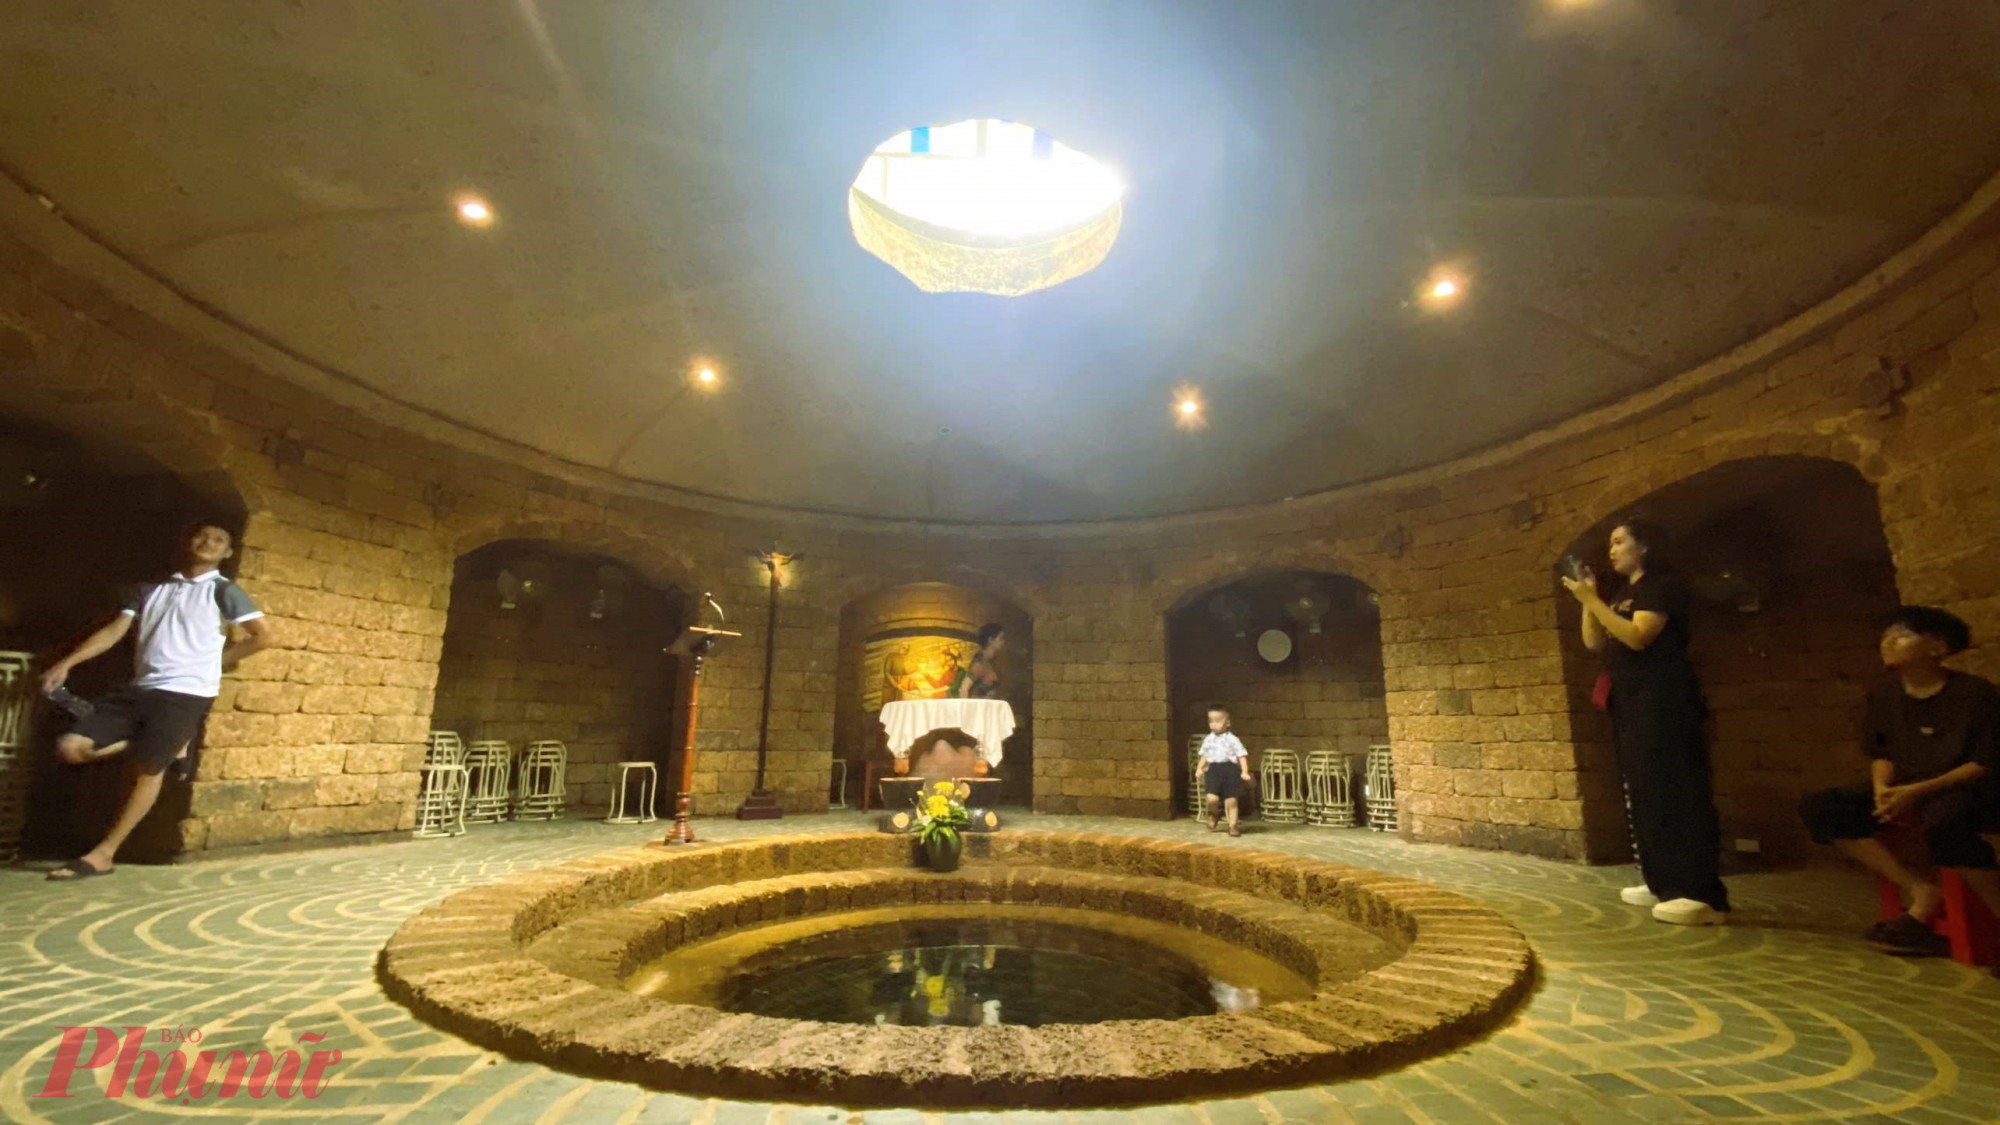 Giếng nước xây bằng đá ong trong hầm. Đây là khu vực cầu nguyện thiêng liêng, không phải lúc nào cũng mở cửa để du khách có thể viếng thăm.